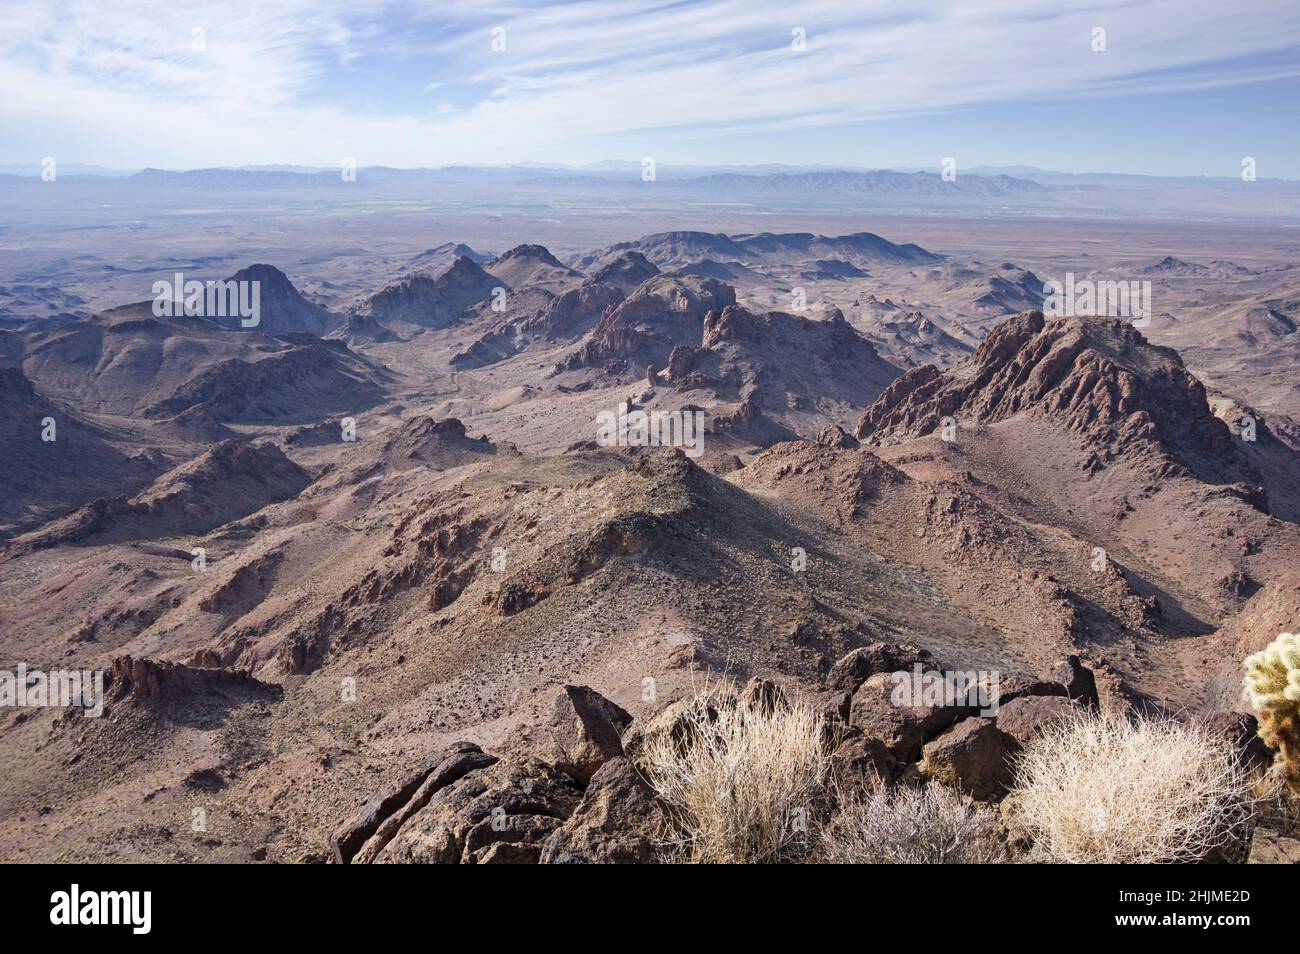 Vista de las montañas en Warm Springs Wilderness en el desierto de Arizona desde Peak 3714 Foto de stock